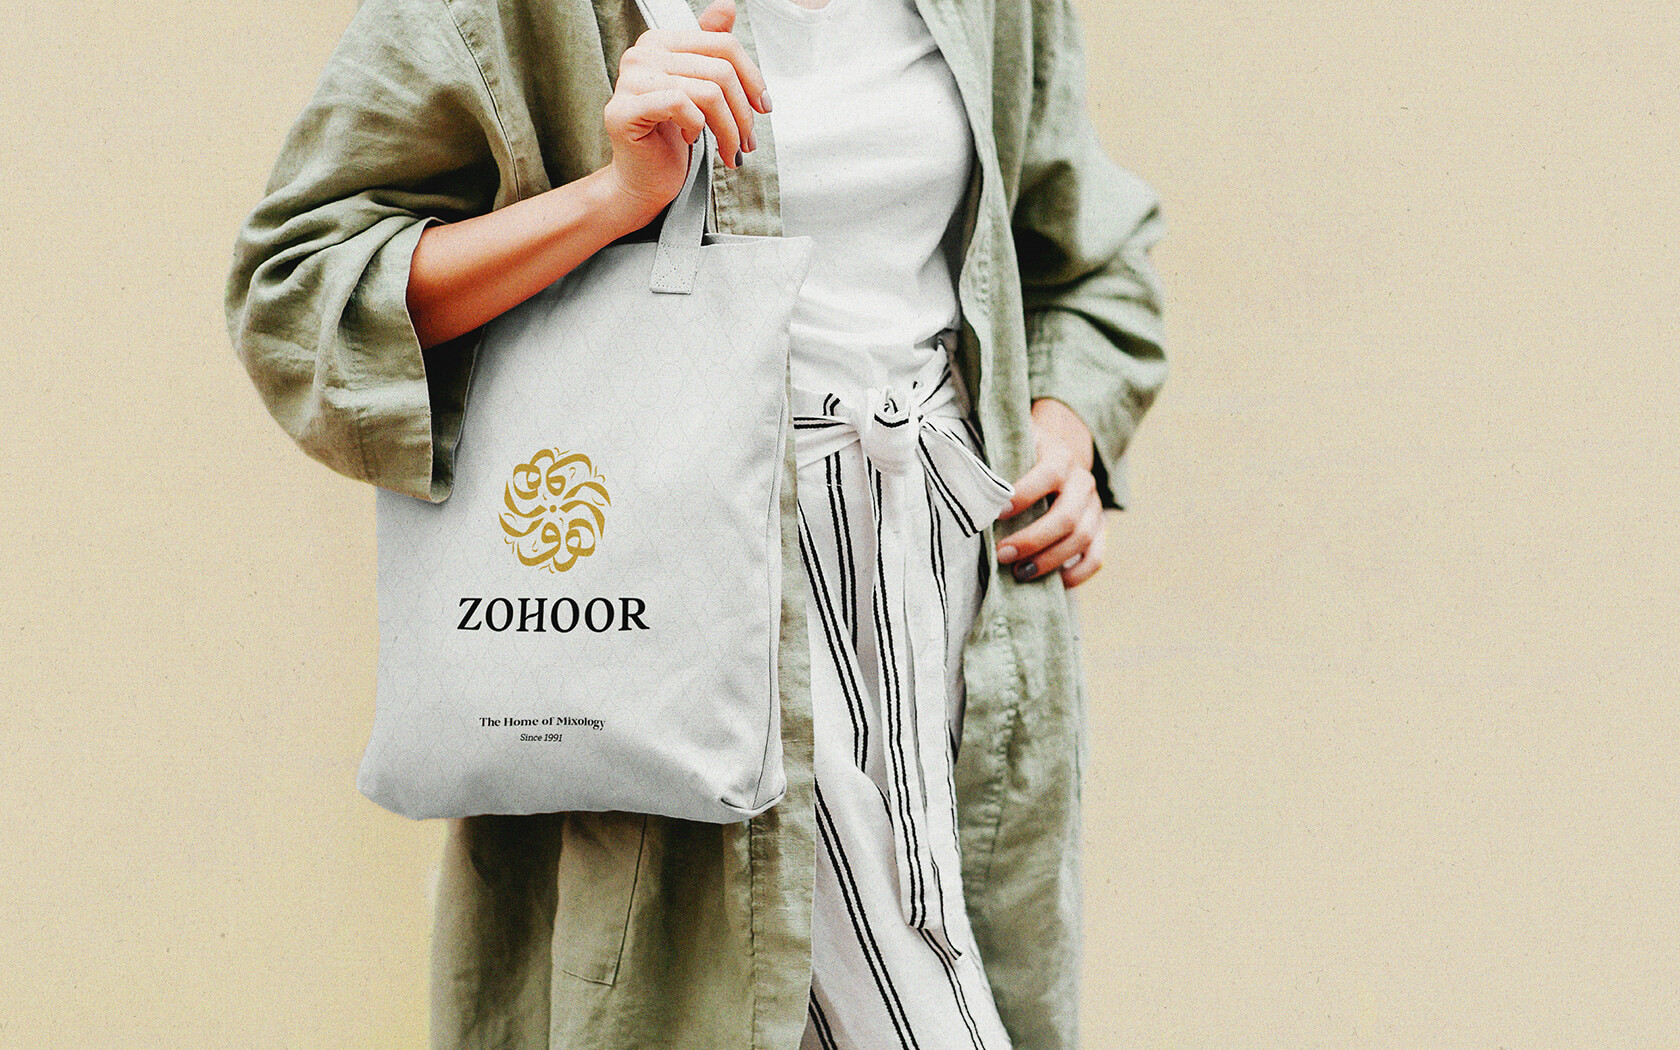 Zohoor. Branded tote bag